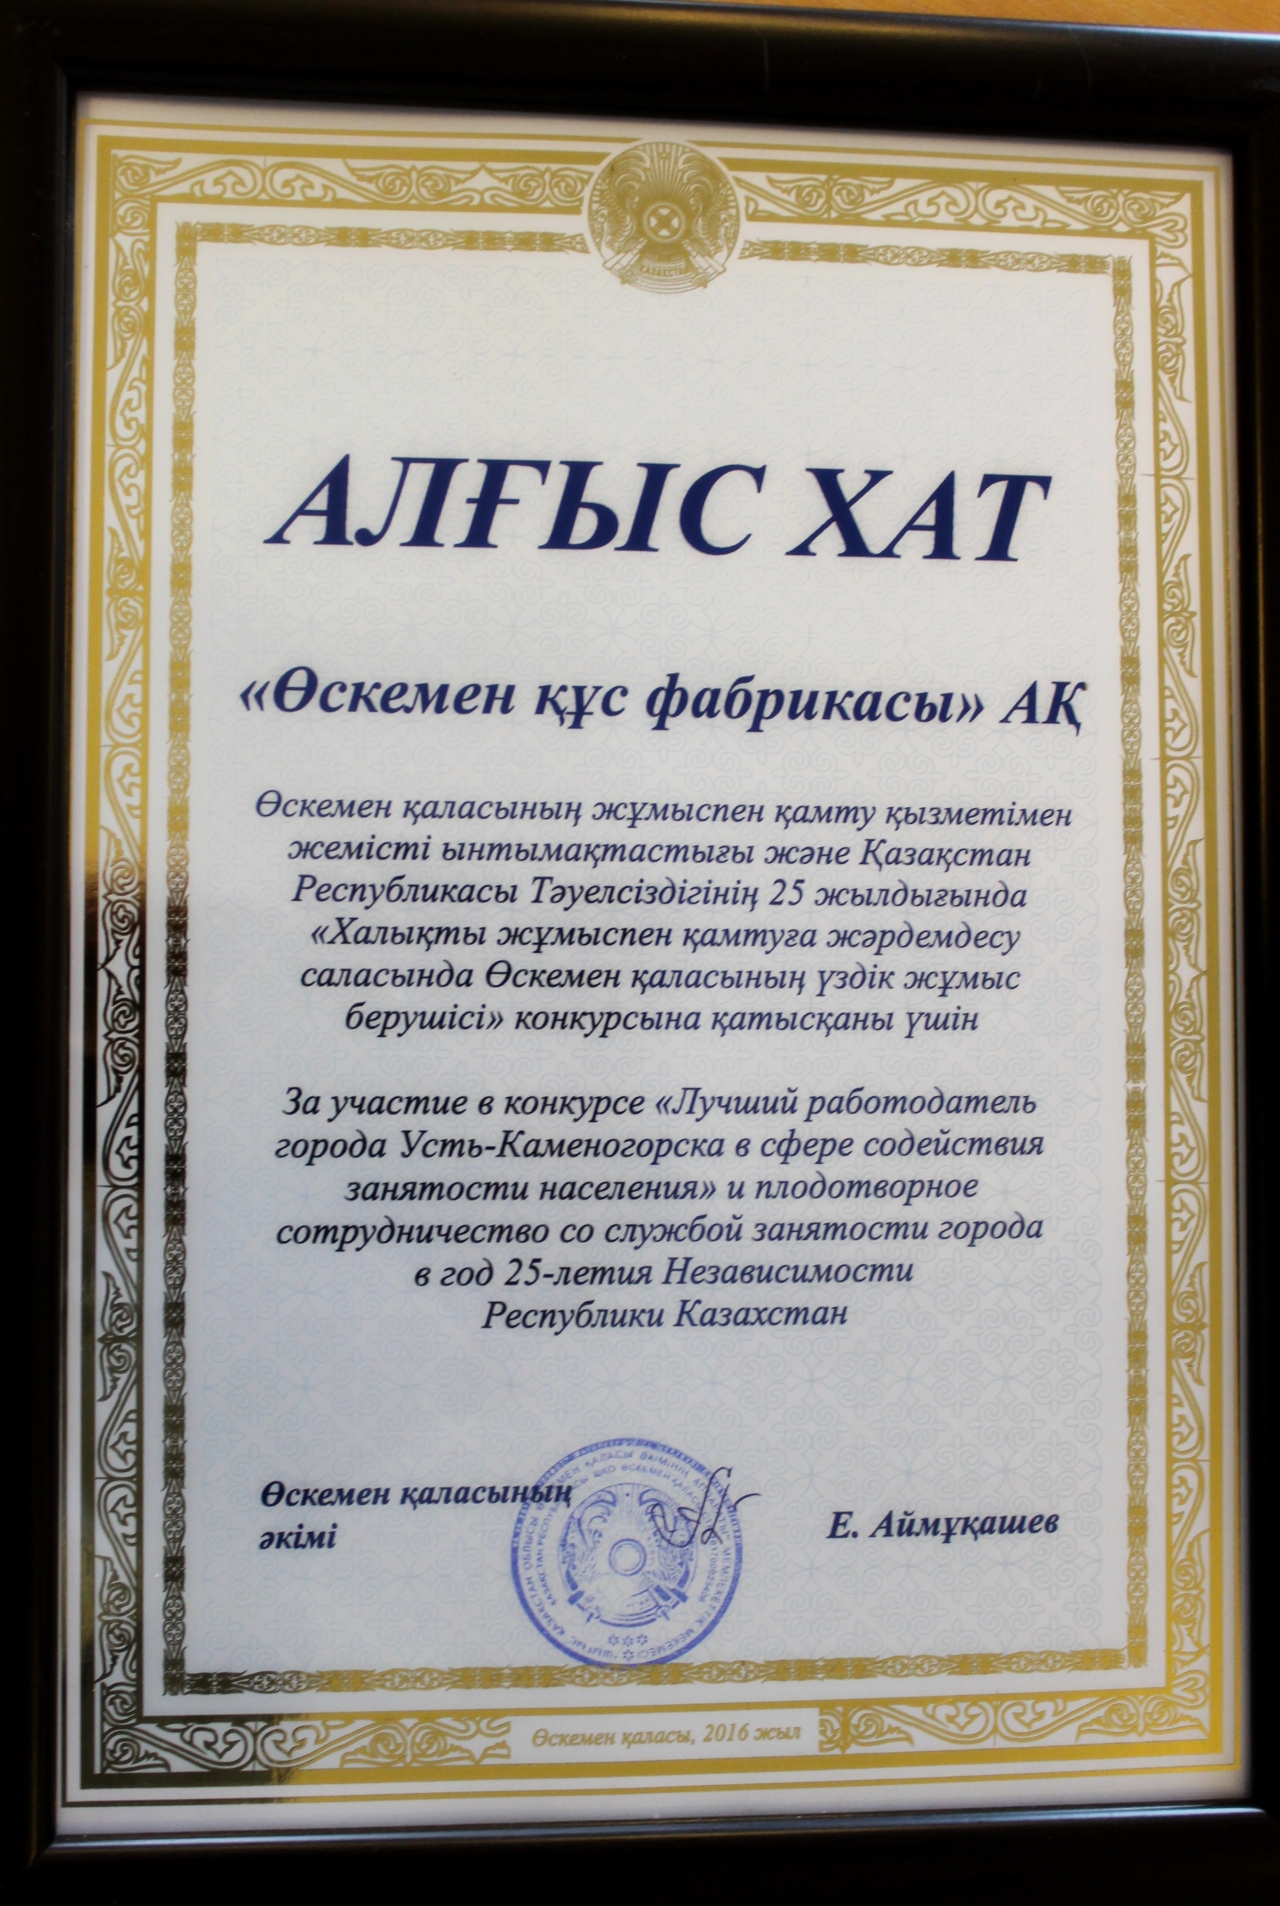 «Best employer of Ust-Kamenogorsk in the field of public employment»